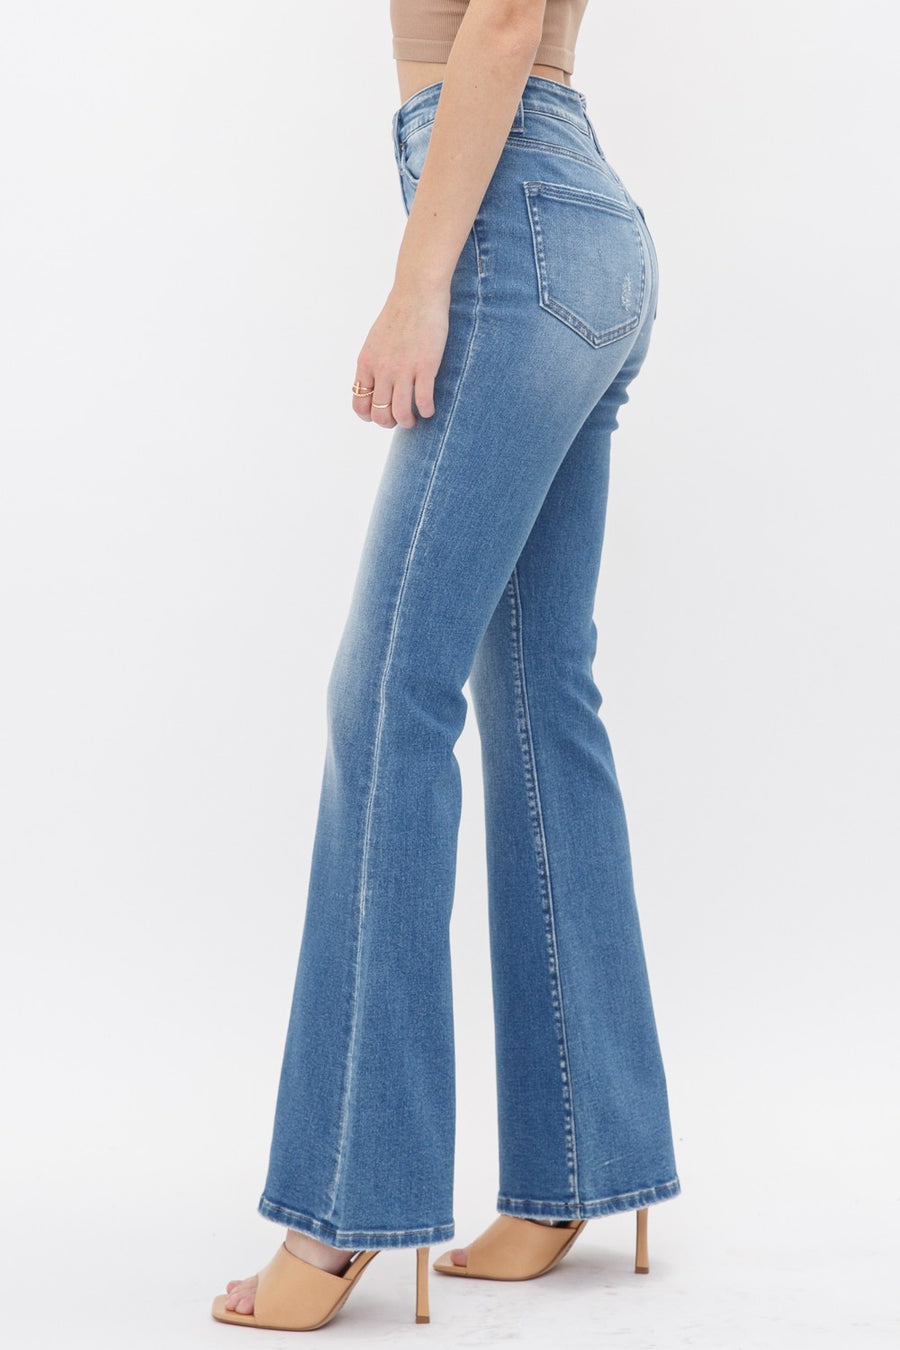 MDP-F172LT Mica Denim High Rise Flare Jeans